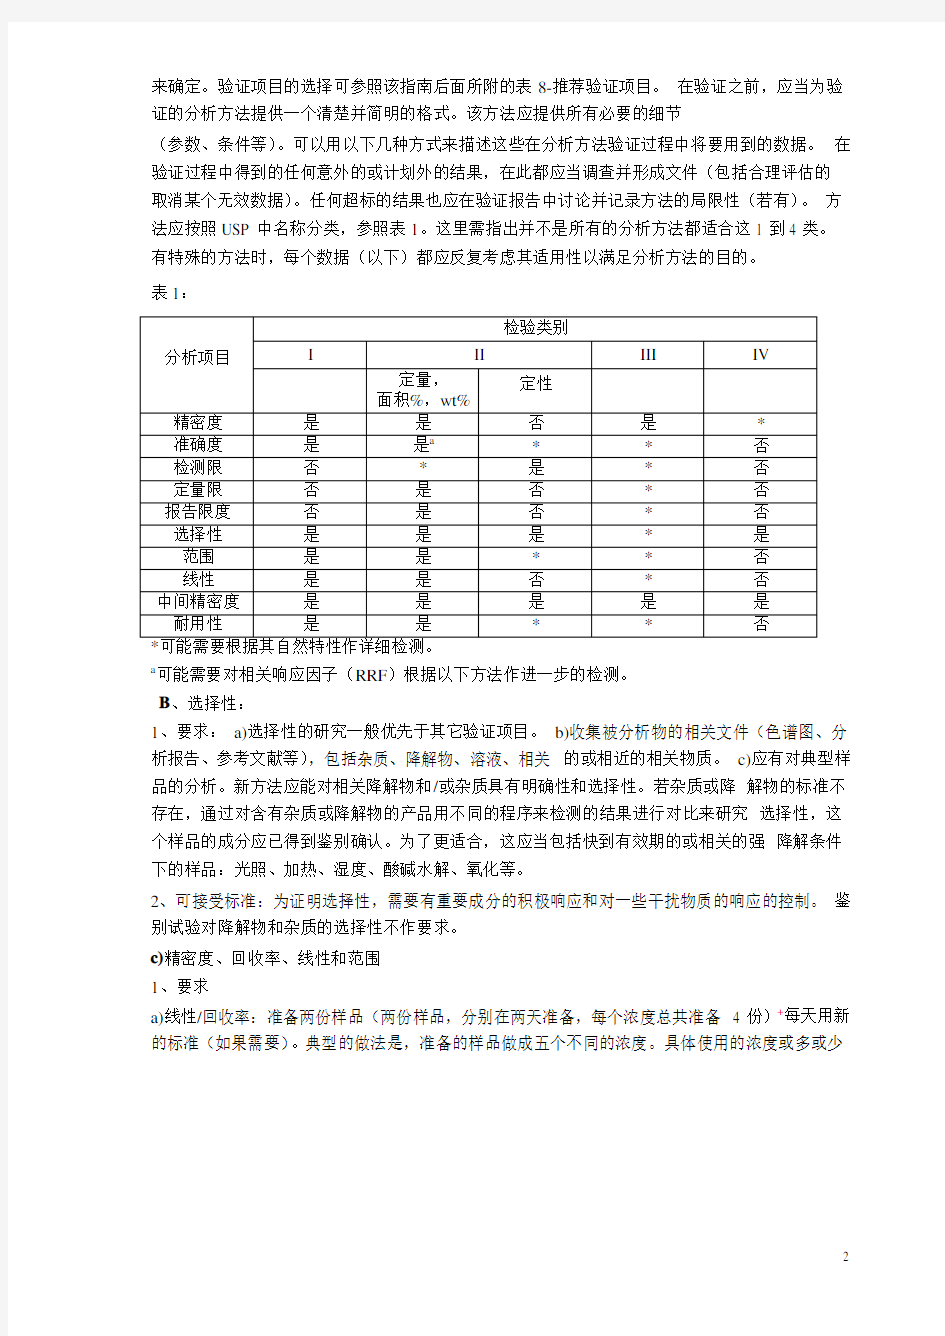 分析方法验证指南(中文)